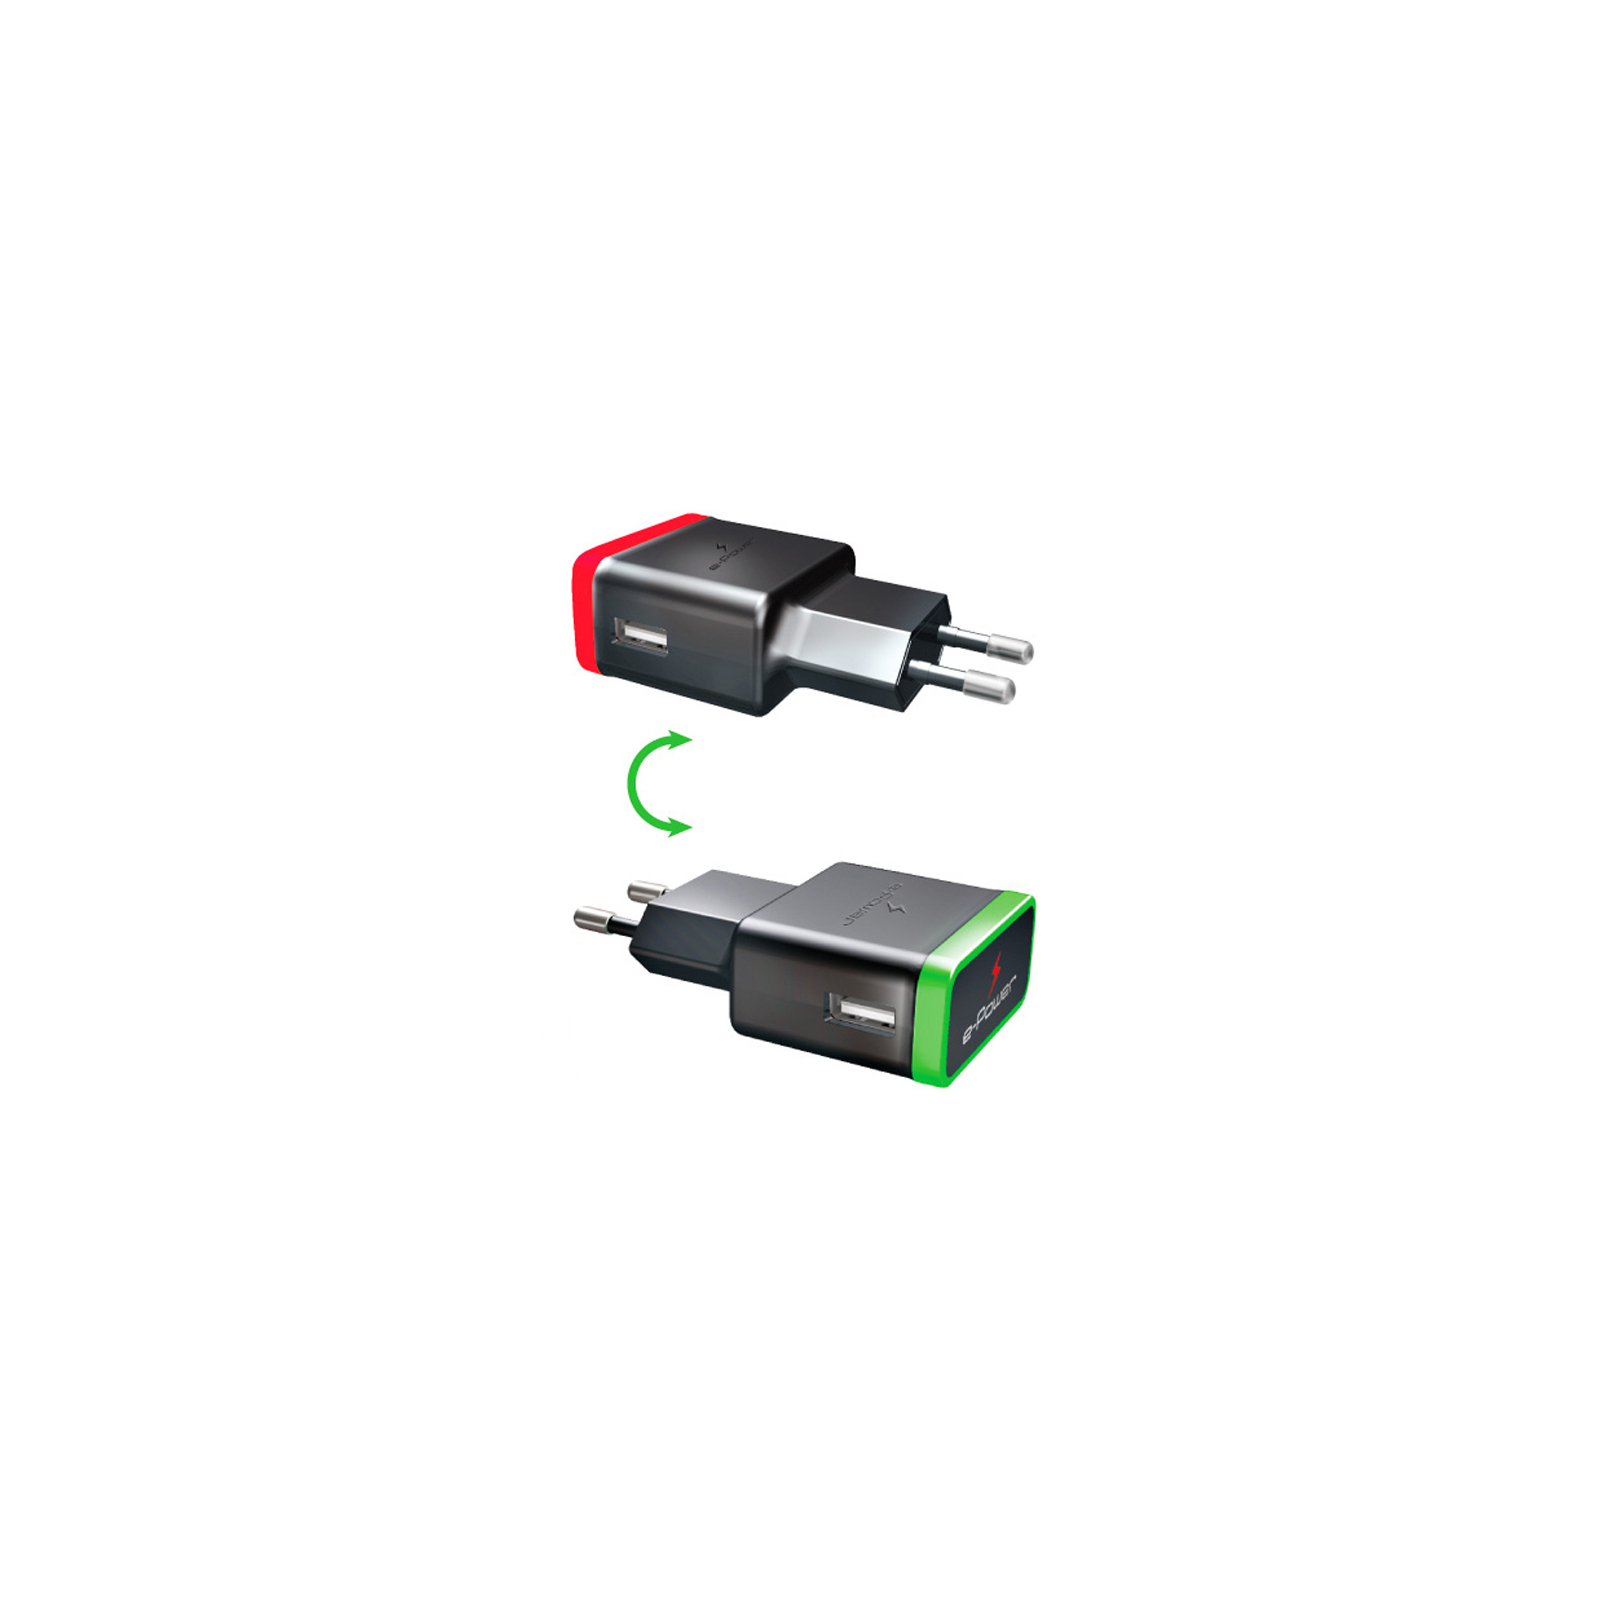 Зарядное устройство E-power Комплект 3в1 2 * USB 2.1A + кабель Lightning (EP812CHS) изображение 3